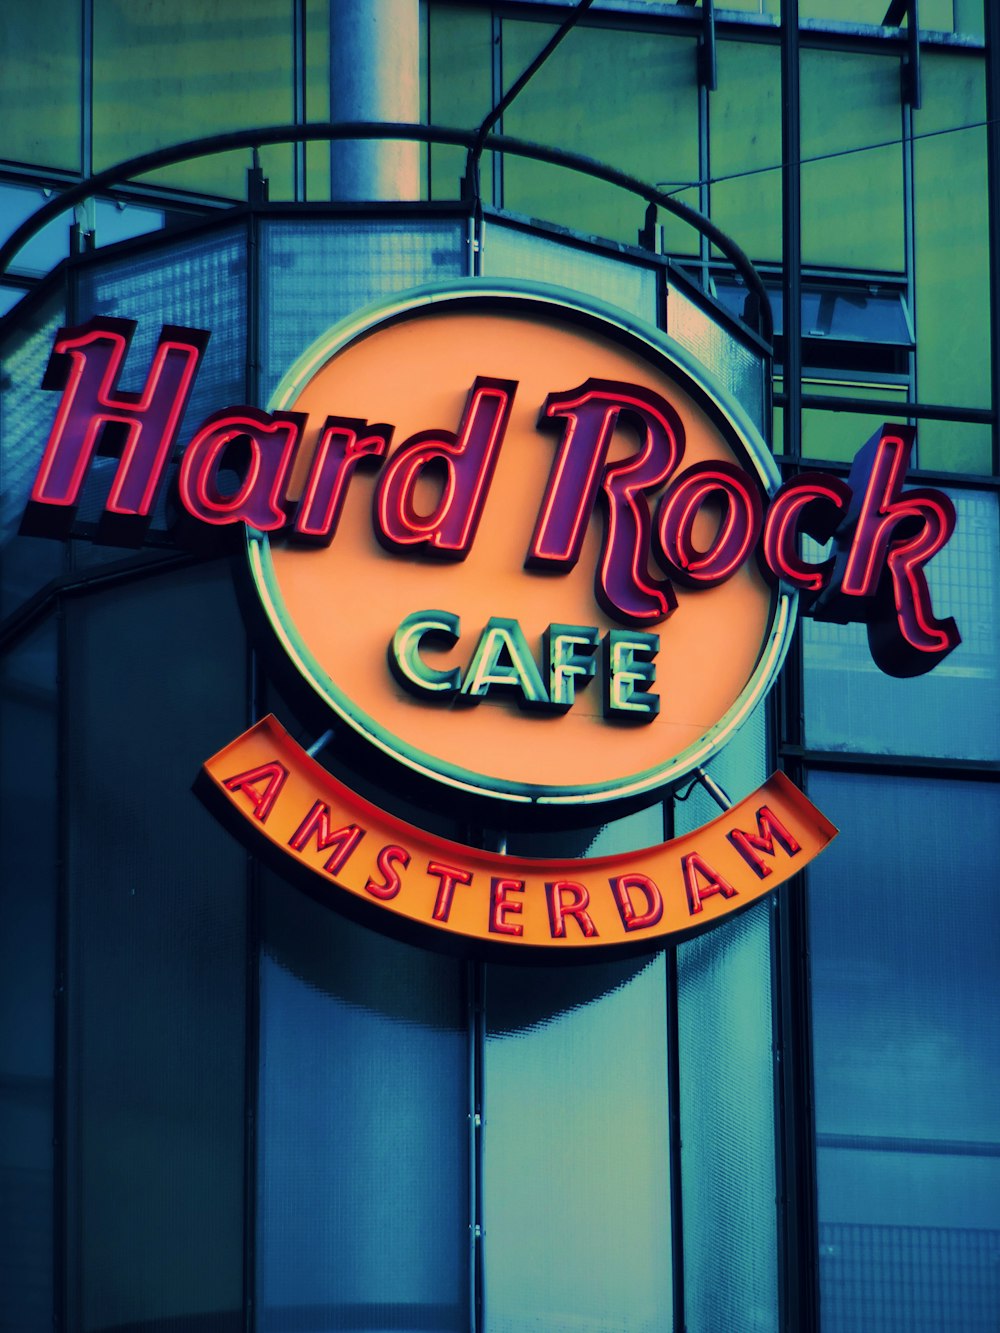 Hard Rock Cafe Amsterdam signage photo – Free Hard rock cafe Image on  Unsplash